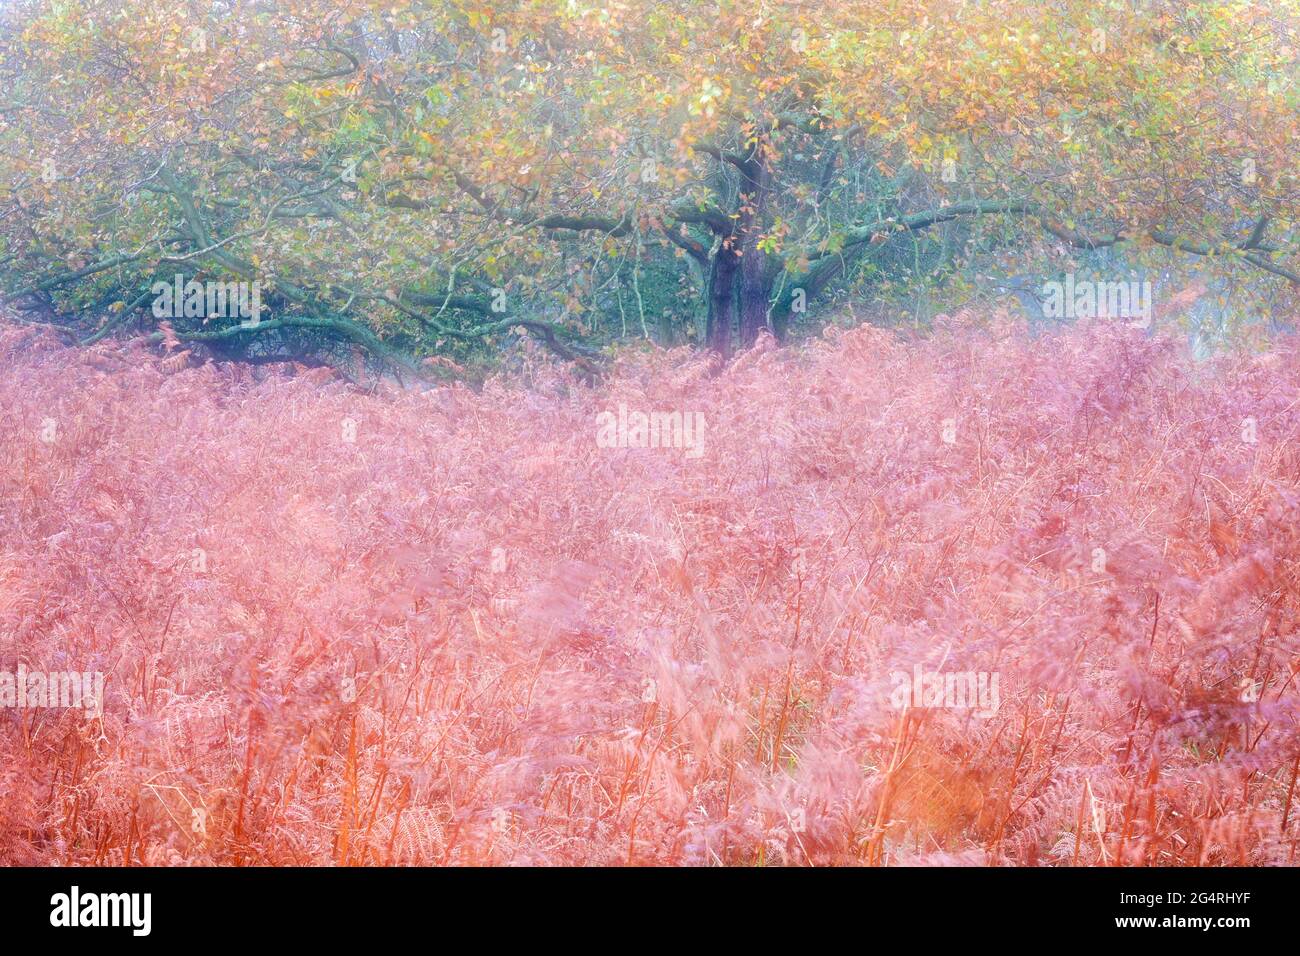 Forêt d'automne avec des feuilles et des fougères colorées, double exposition, Amsterdam Waterleidingduinen, pays-Bas Banque D'Images